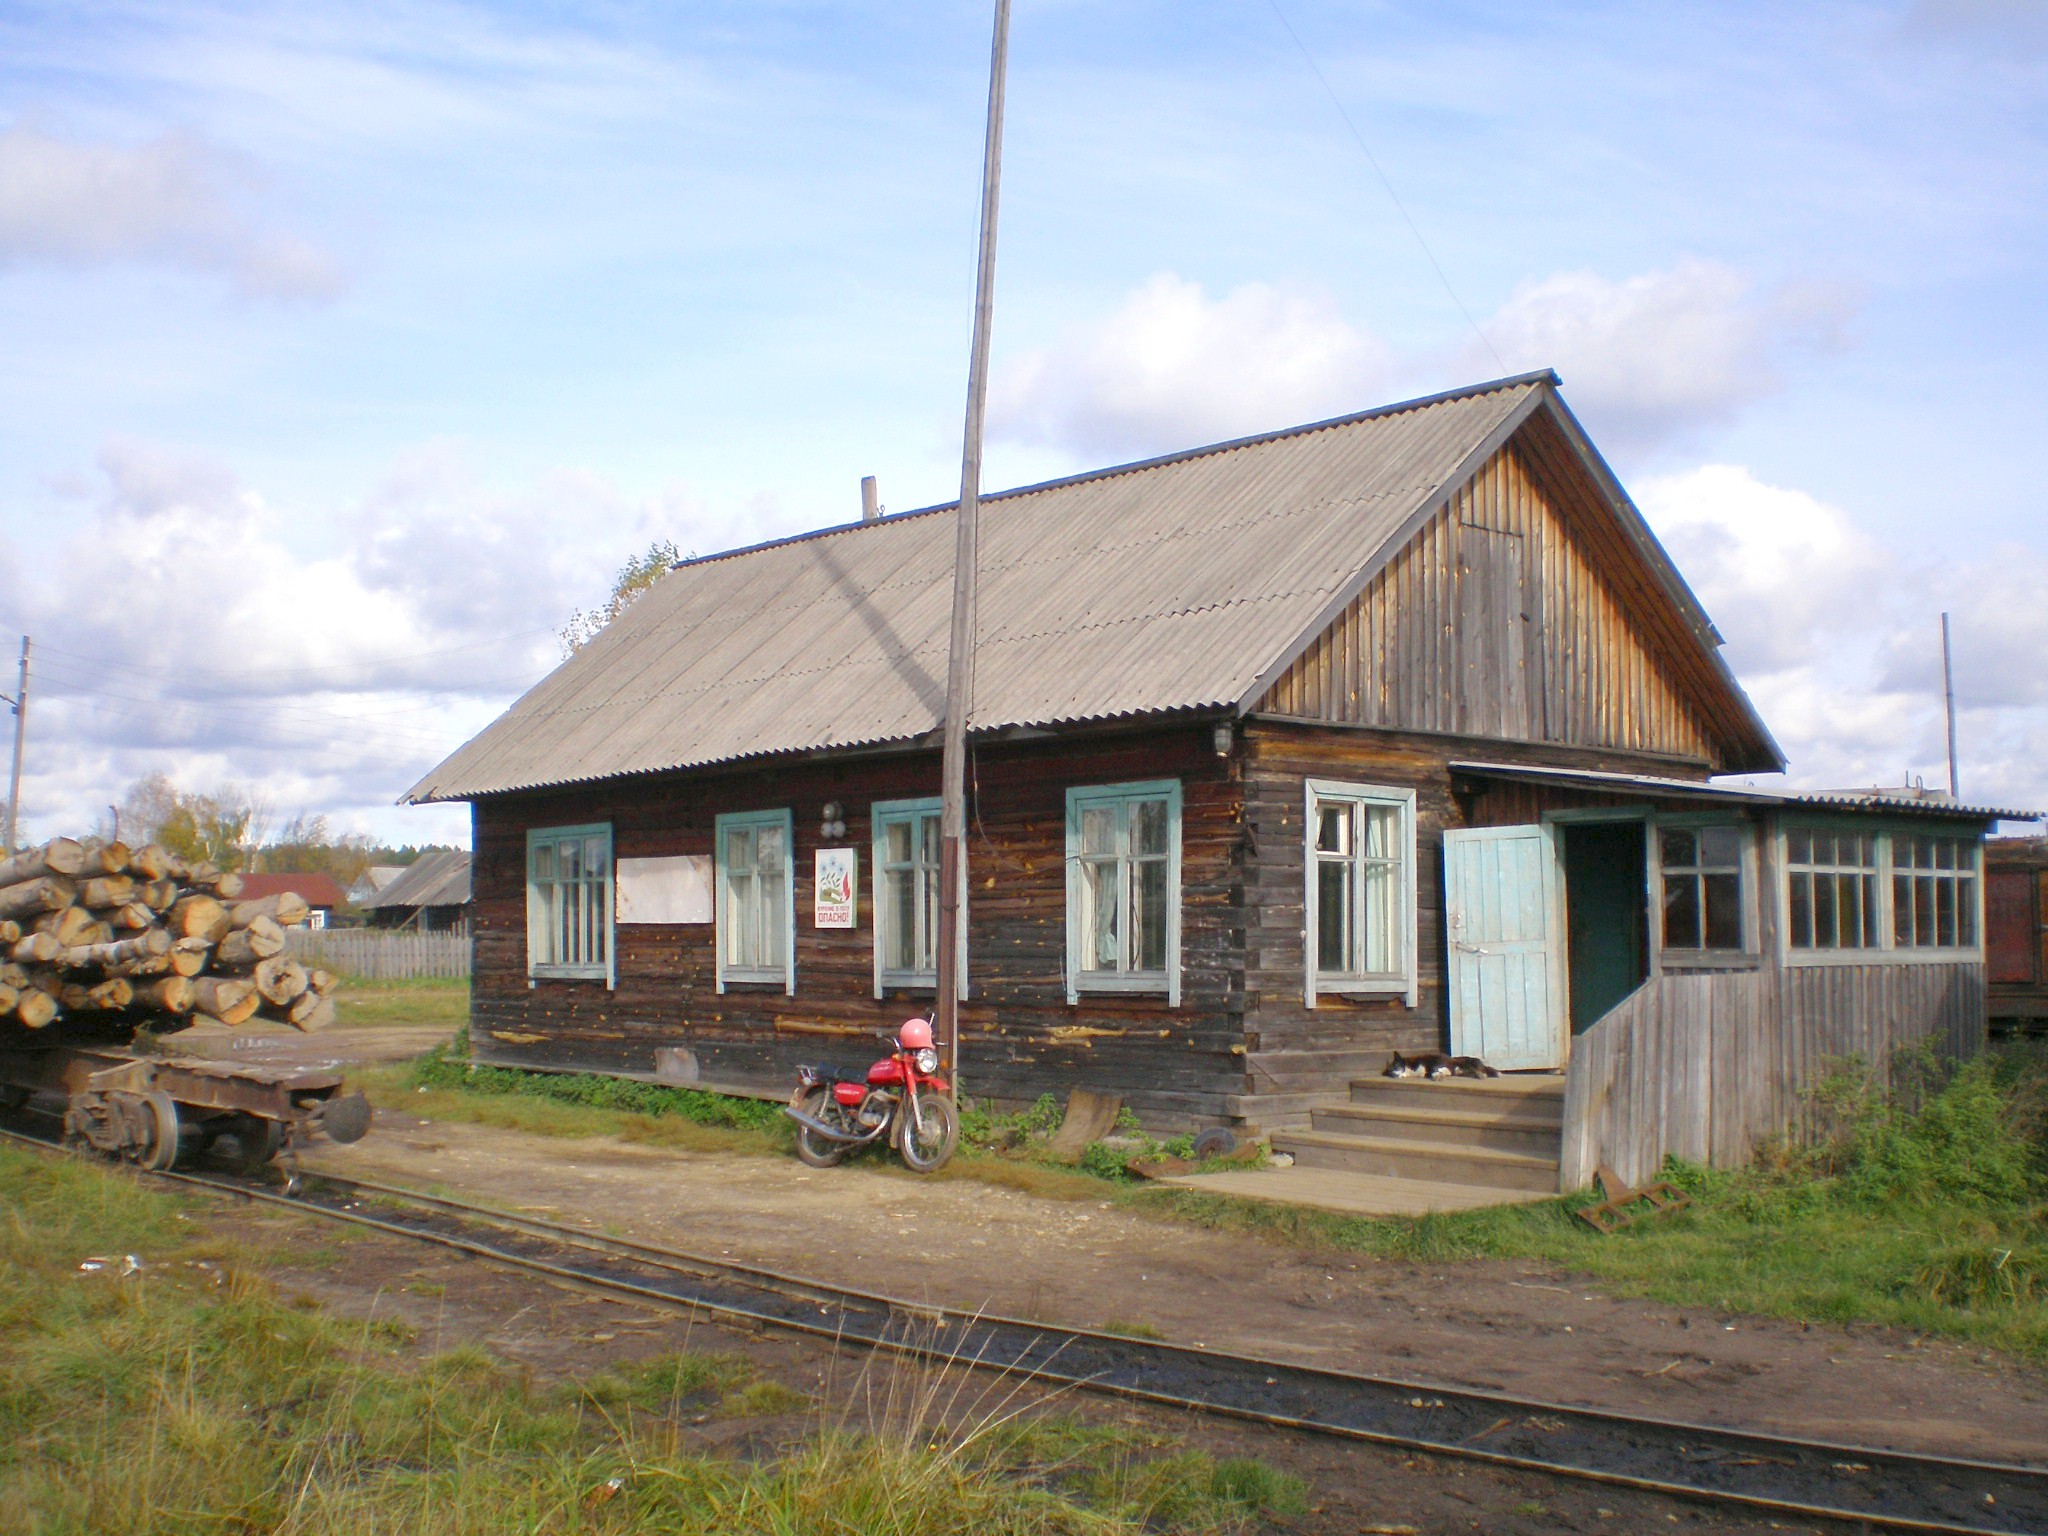 Пинюгская узкоколейная железная дорога  —  фотографии, сделанные в 2007 году (часть 2)